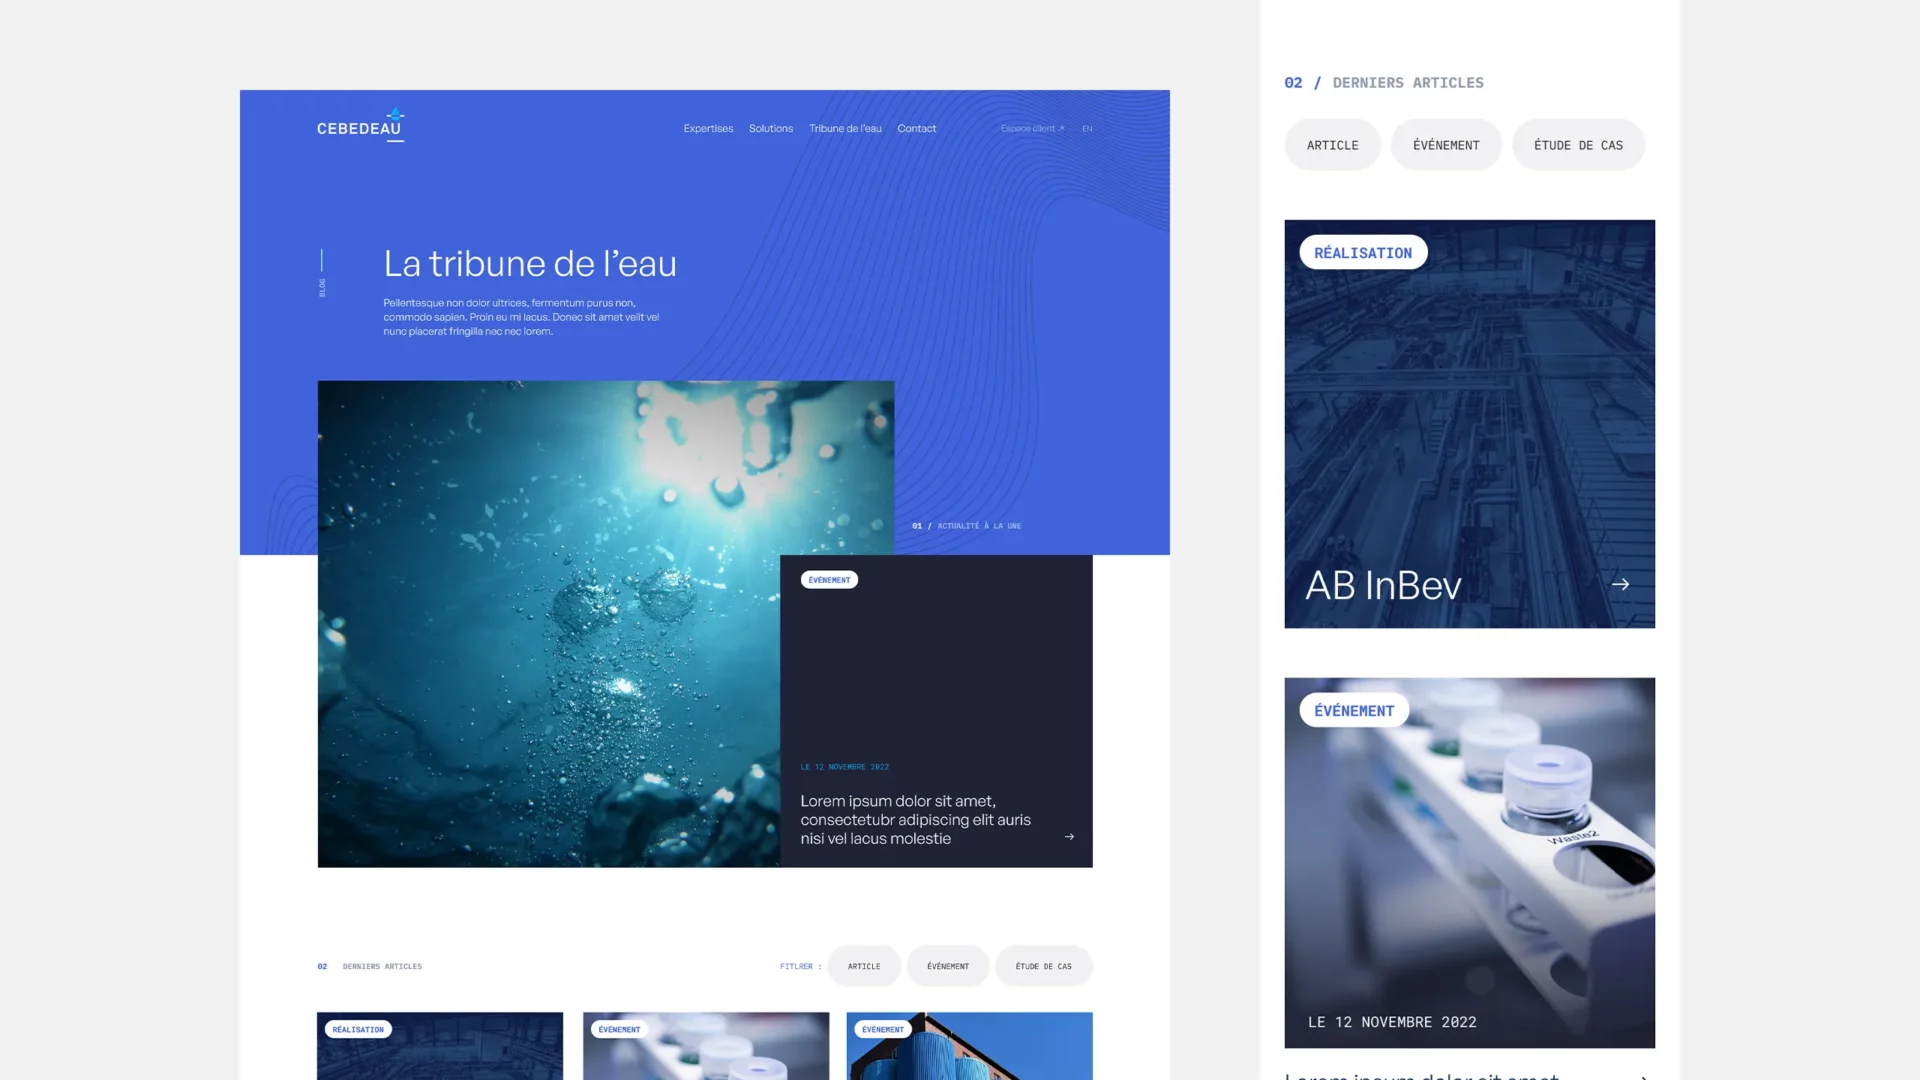 Cebeau website's page "La tribune de l'eau" in its desktop and mobile version